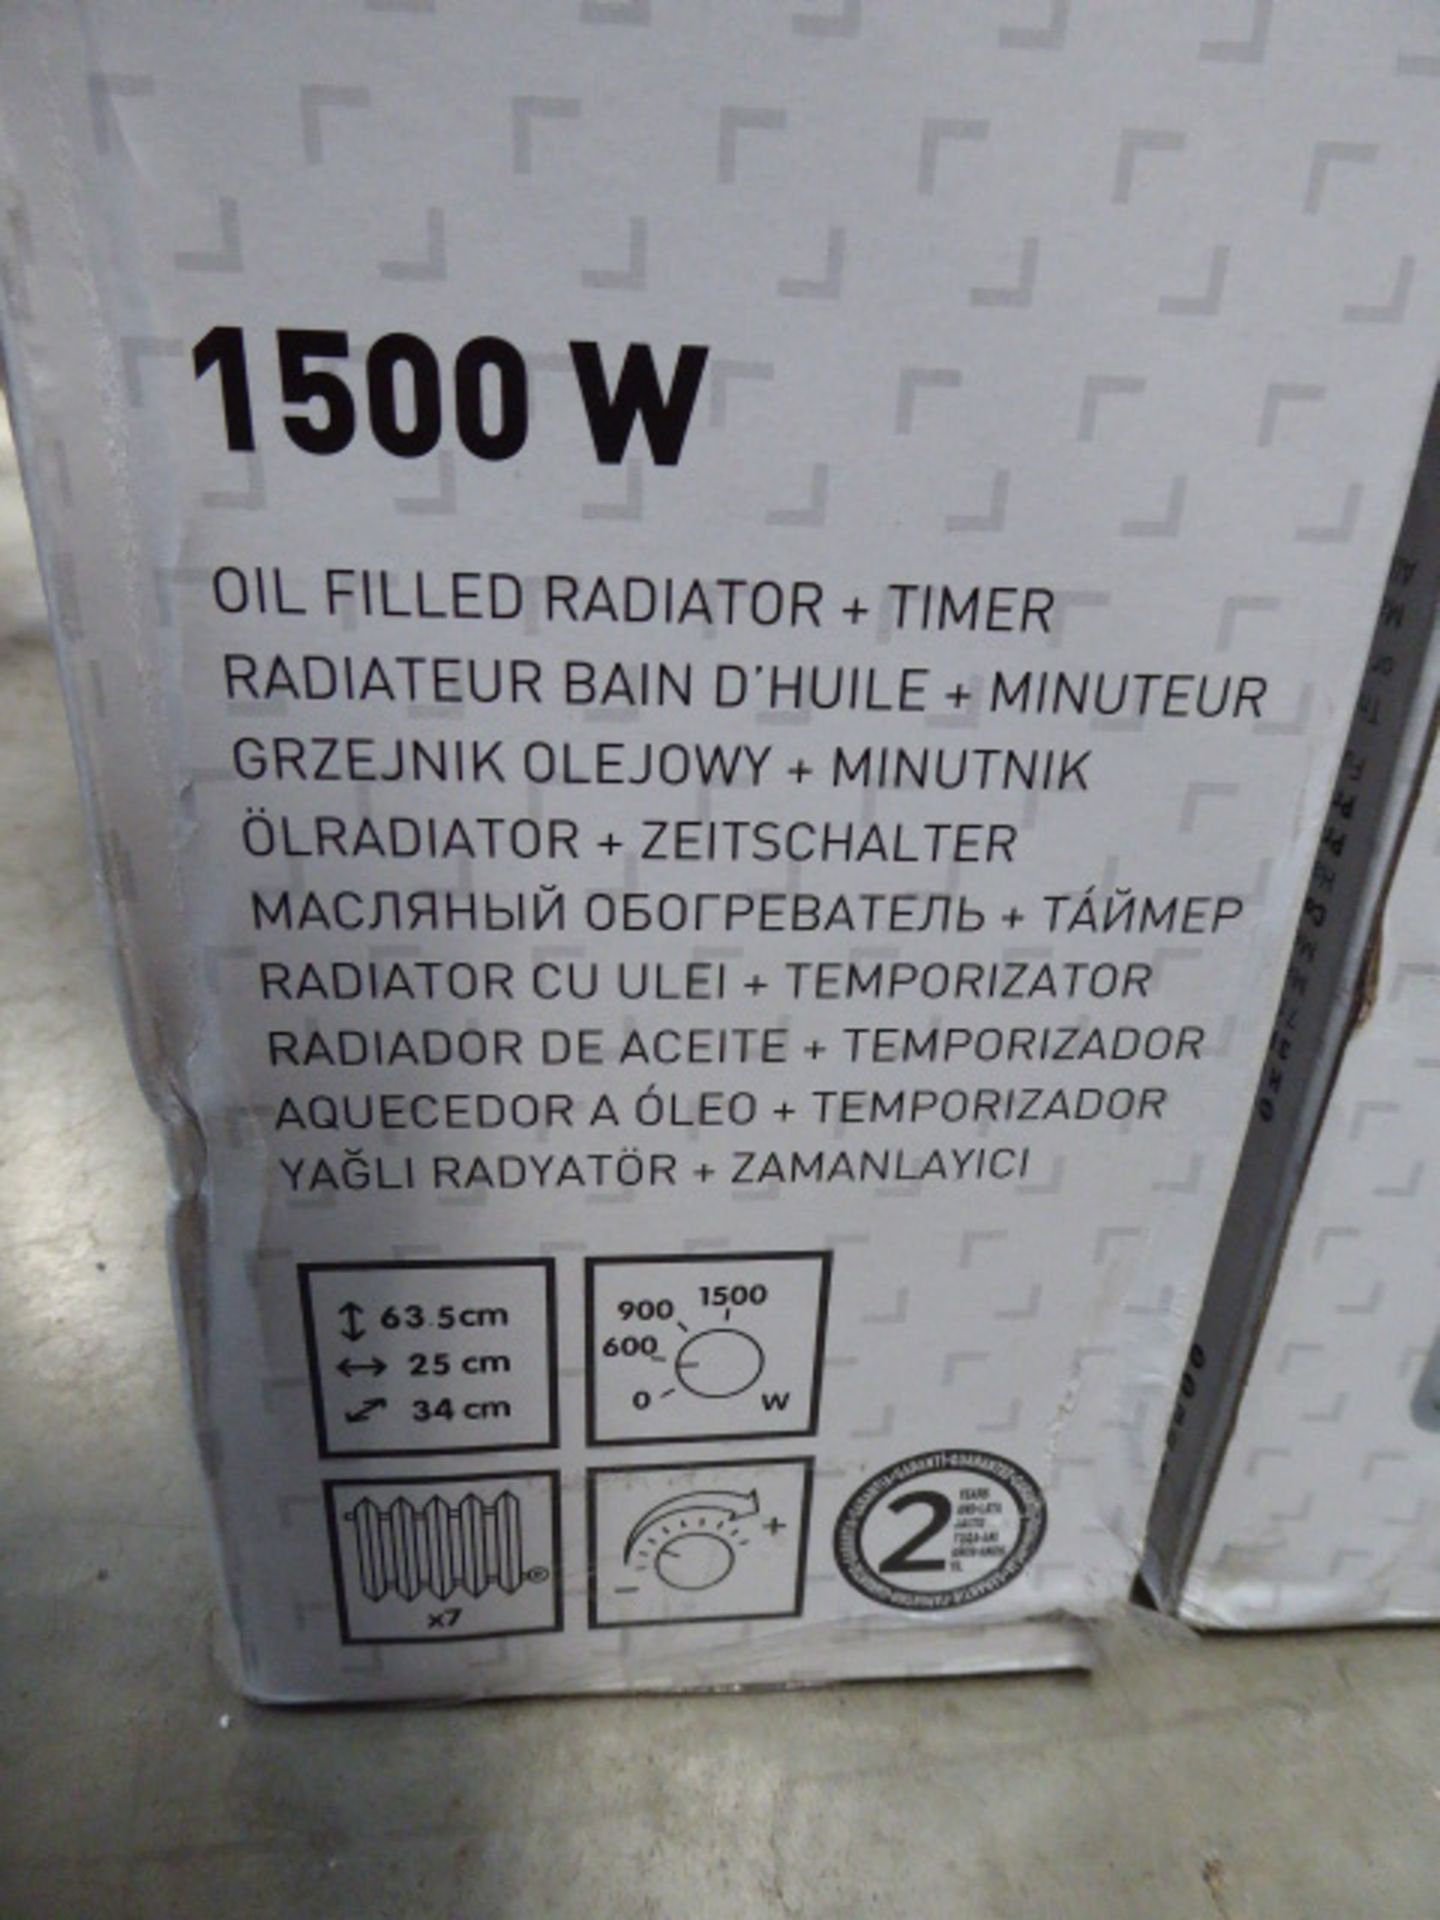 5 boxed 1500 watt white oil filled radiators - Image 2 of 3